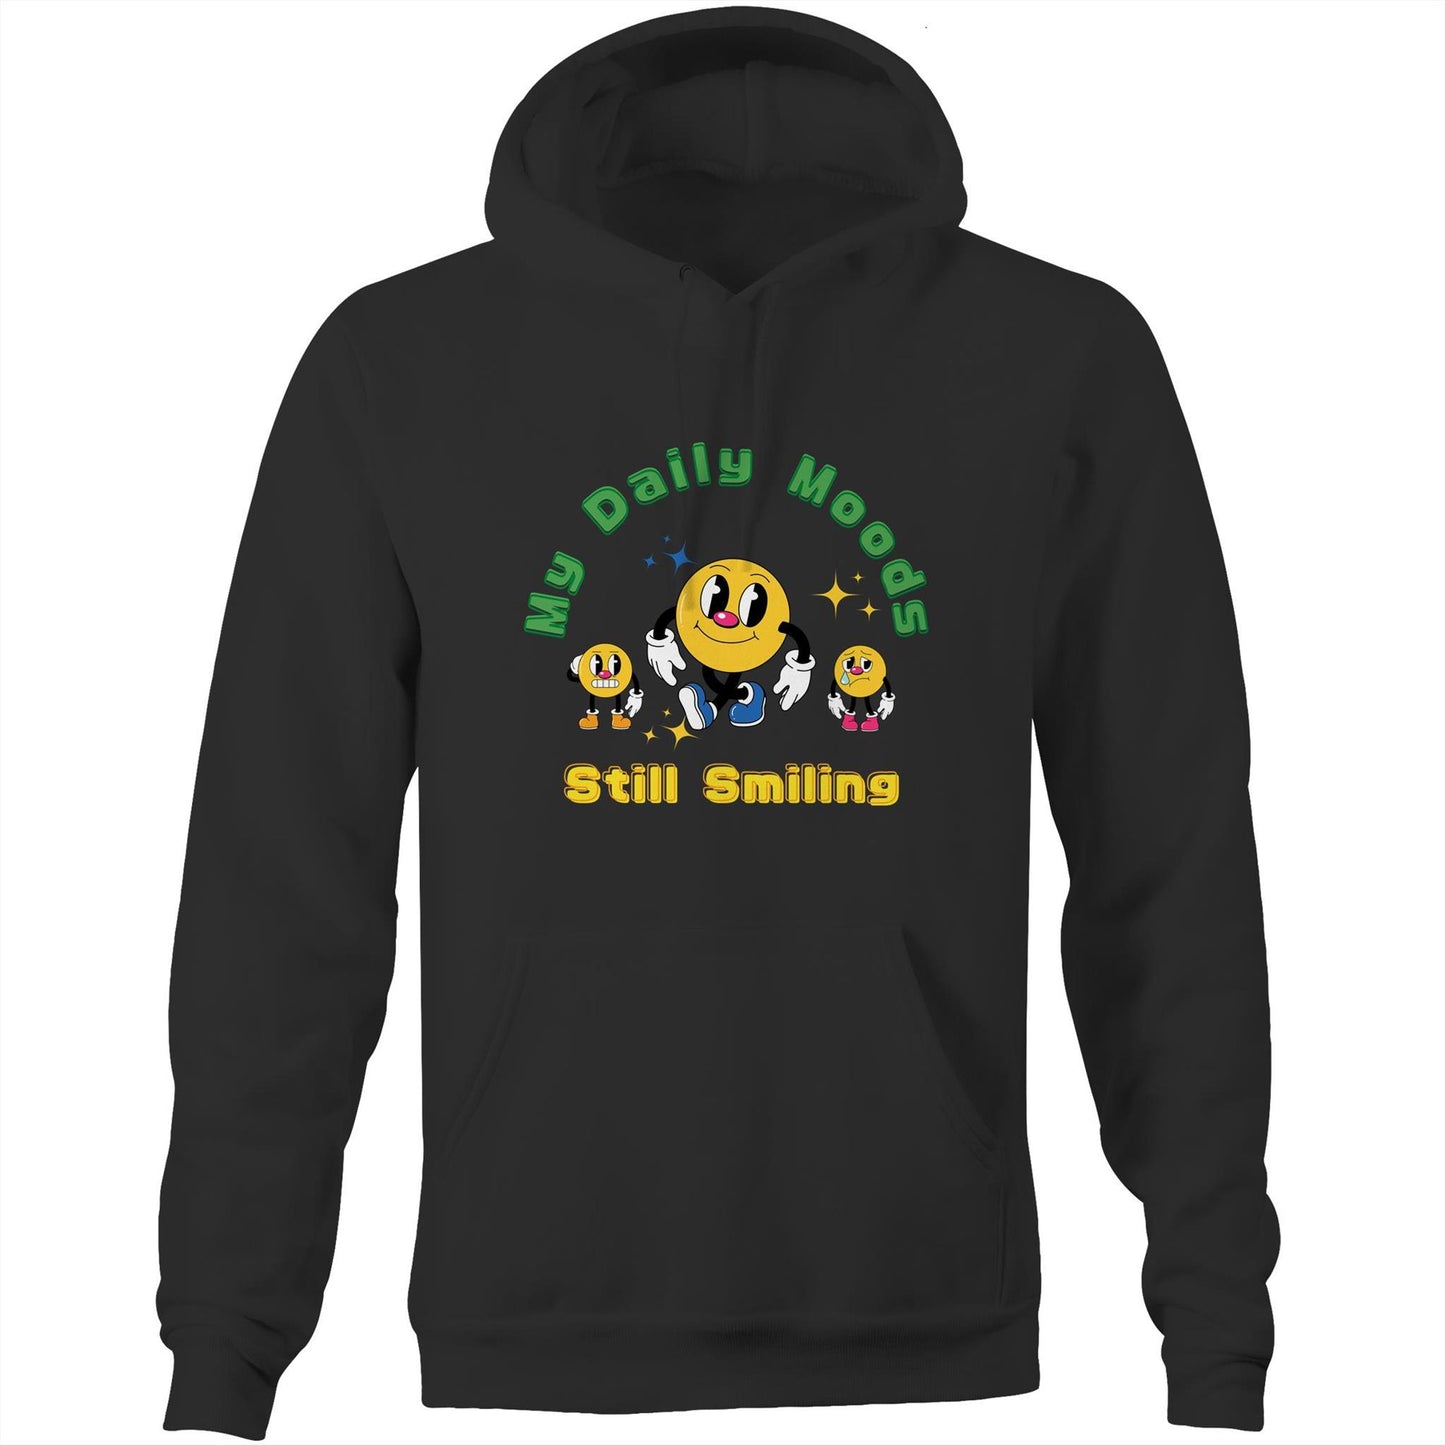 My Daily Moods - Pocket Hoodie Sweatshirt Black Hoodie